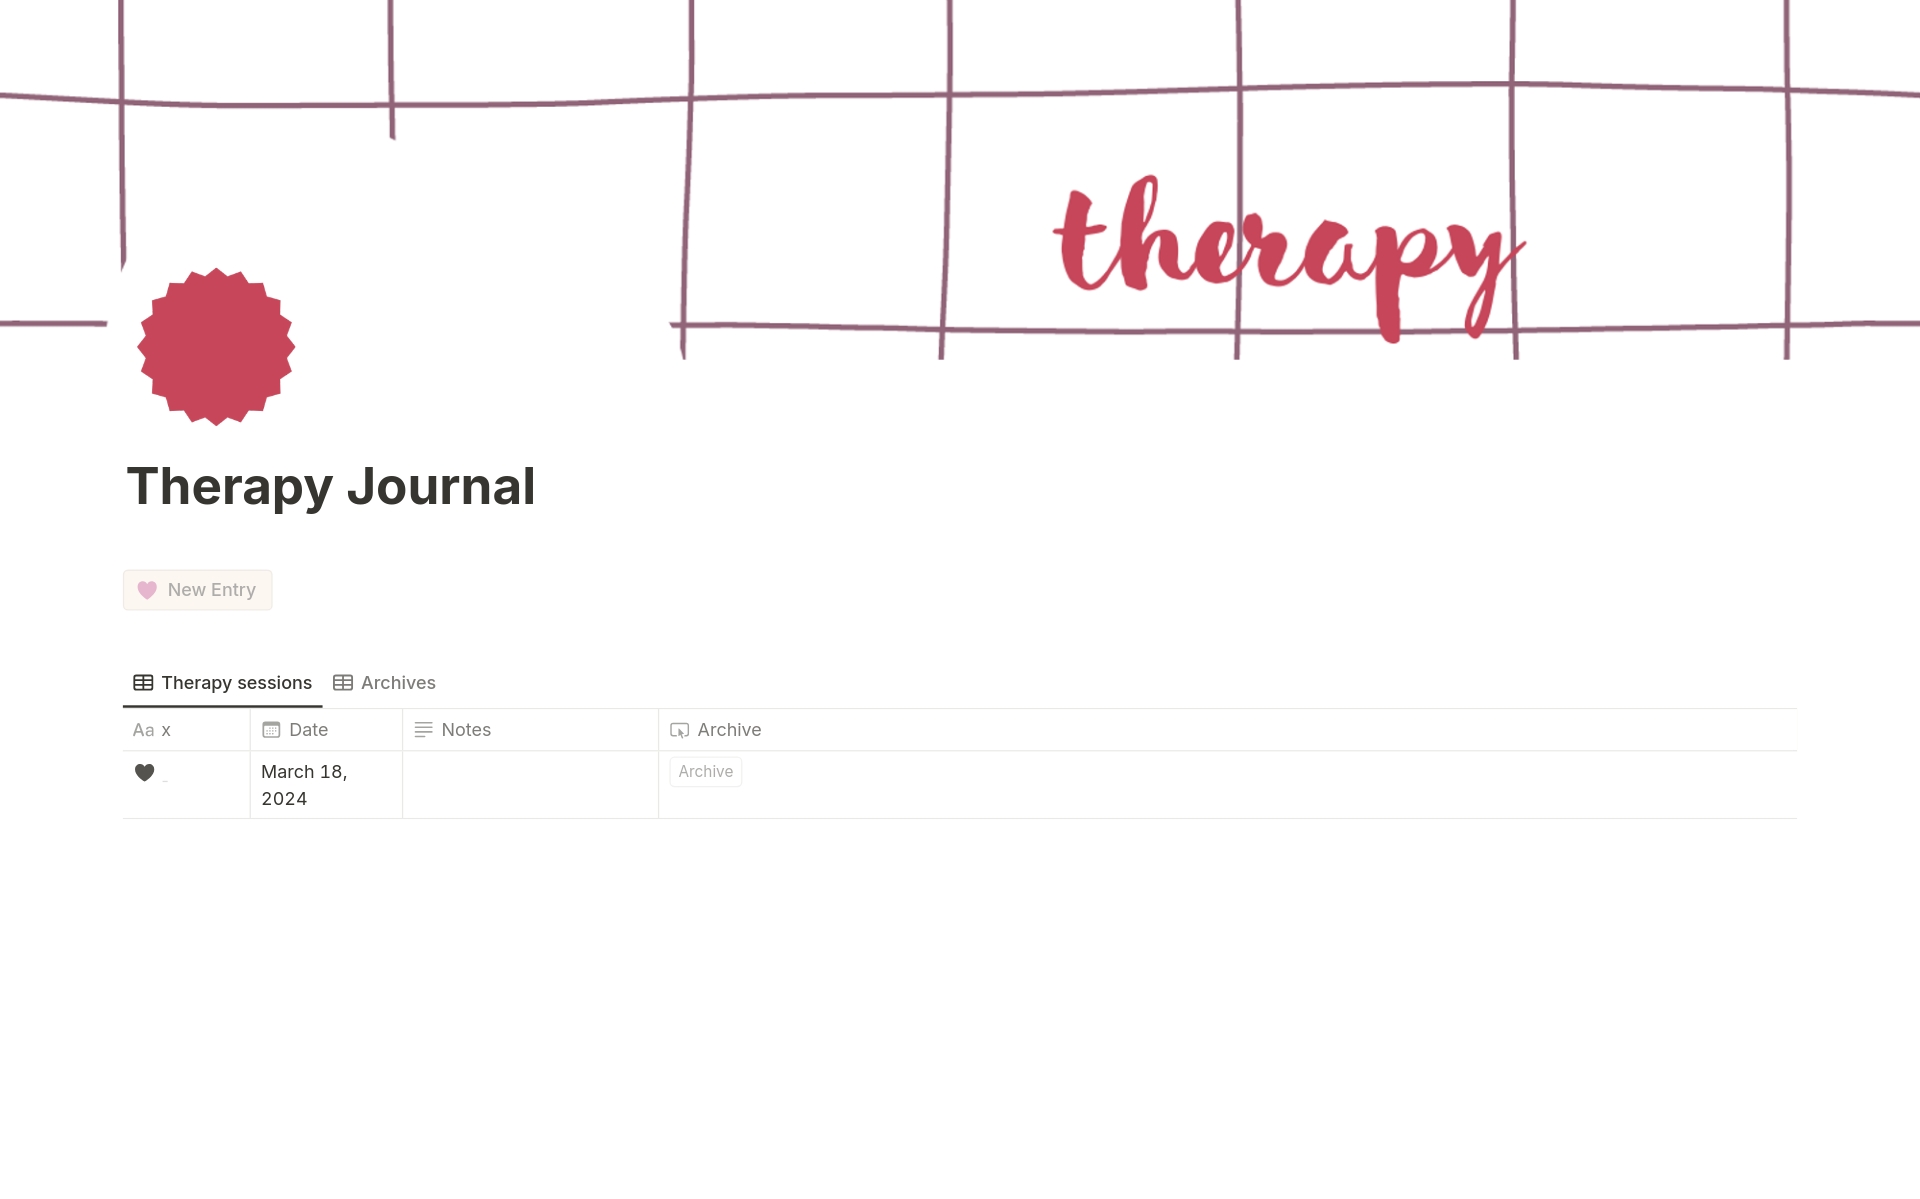 Vista previa de una plantilla para Therapy Journal